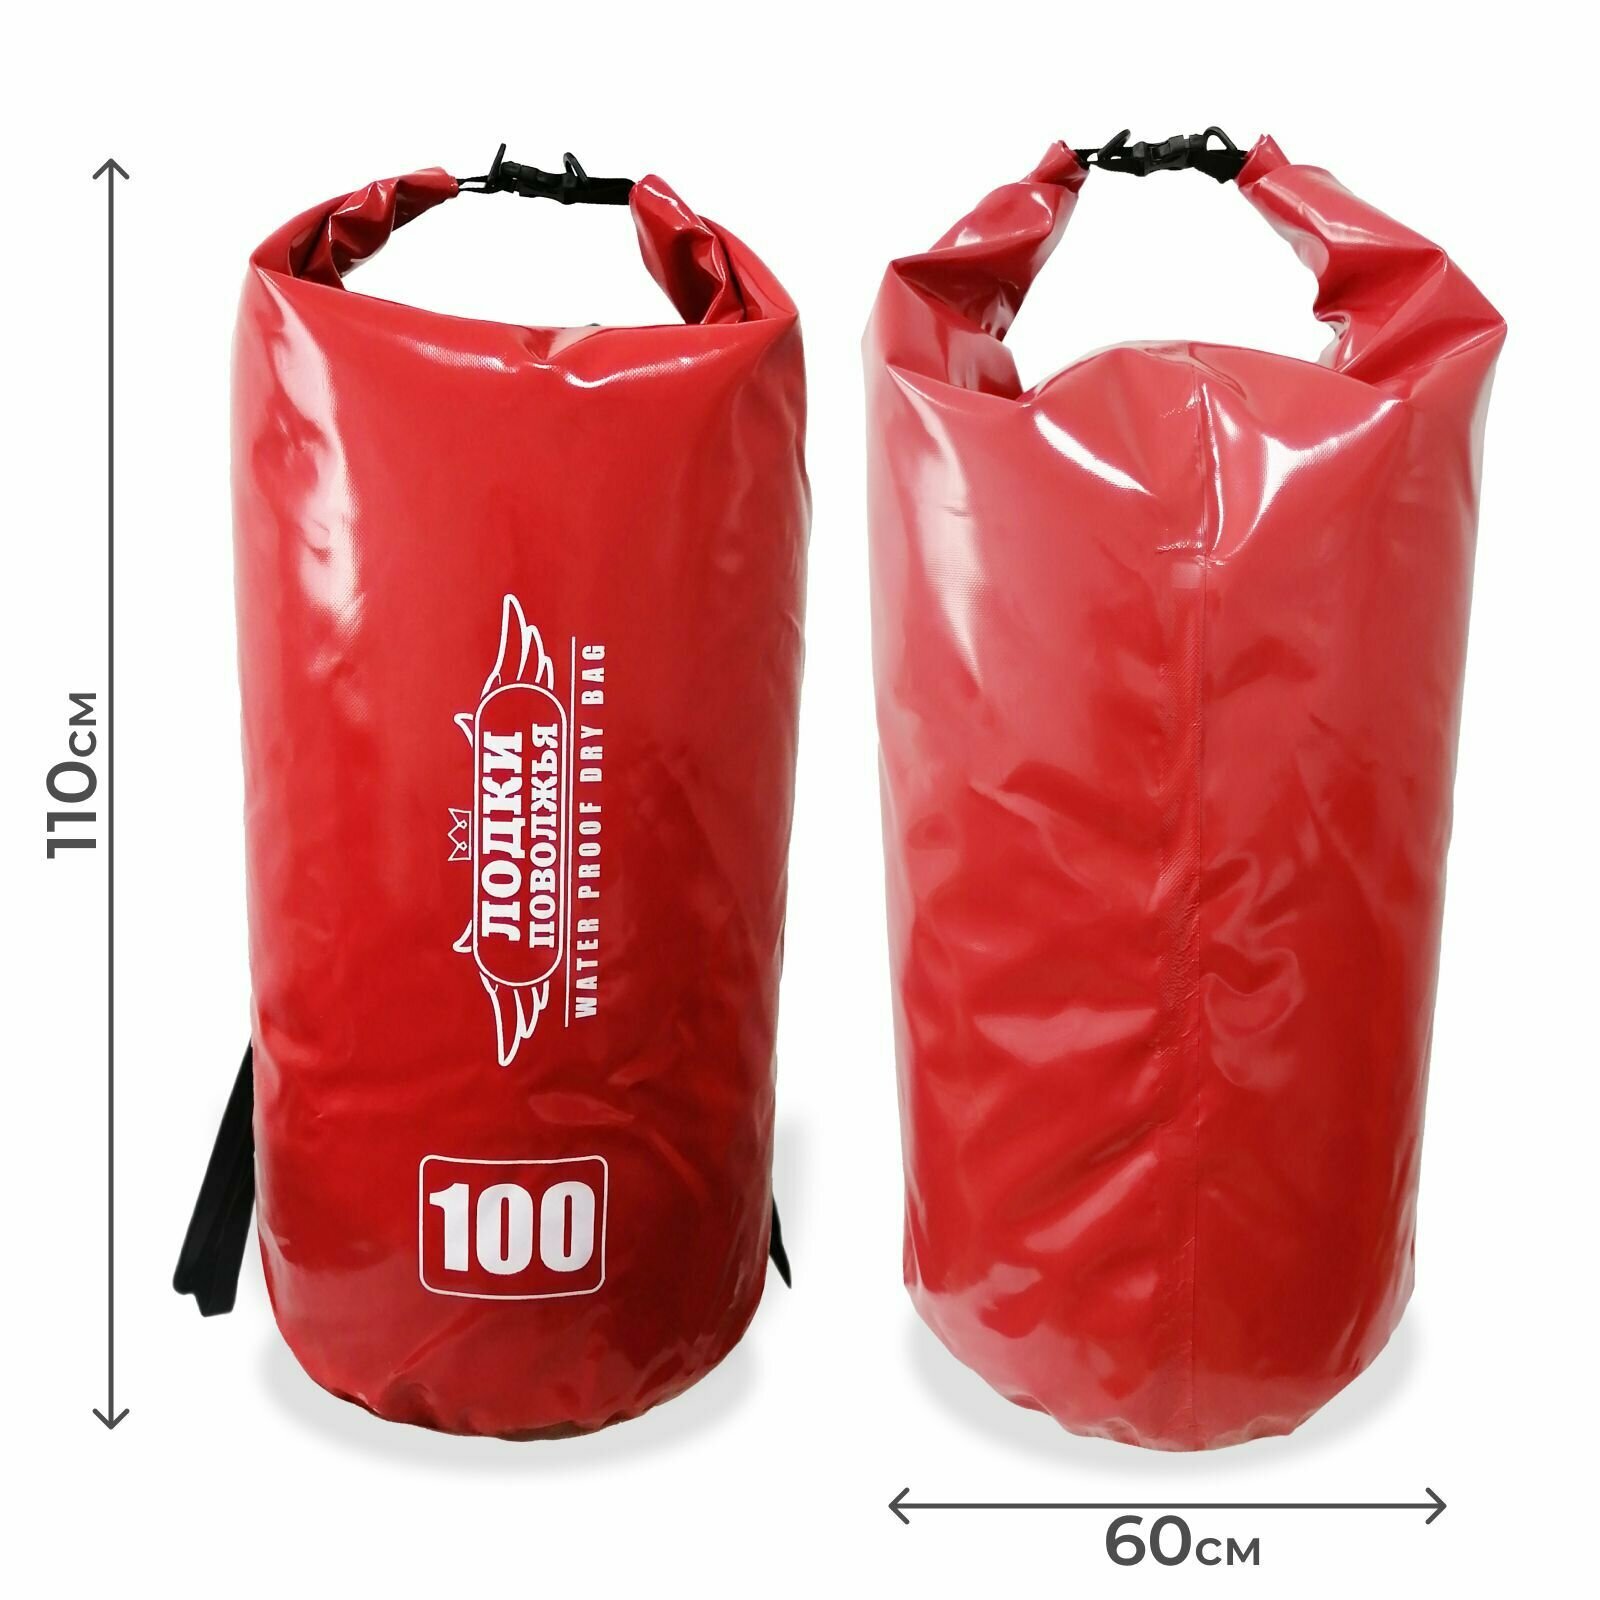 Рюкзак для рыбалки и охоты 100 литров красный, гермомешок с лямками, герморюкзак спортивный походный, мешок для рыбы